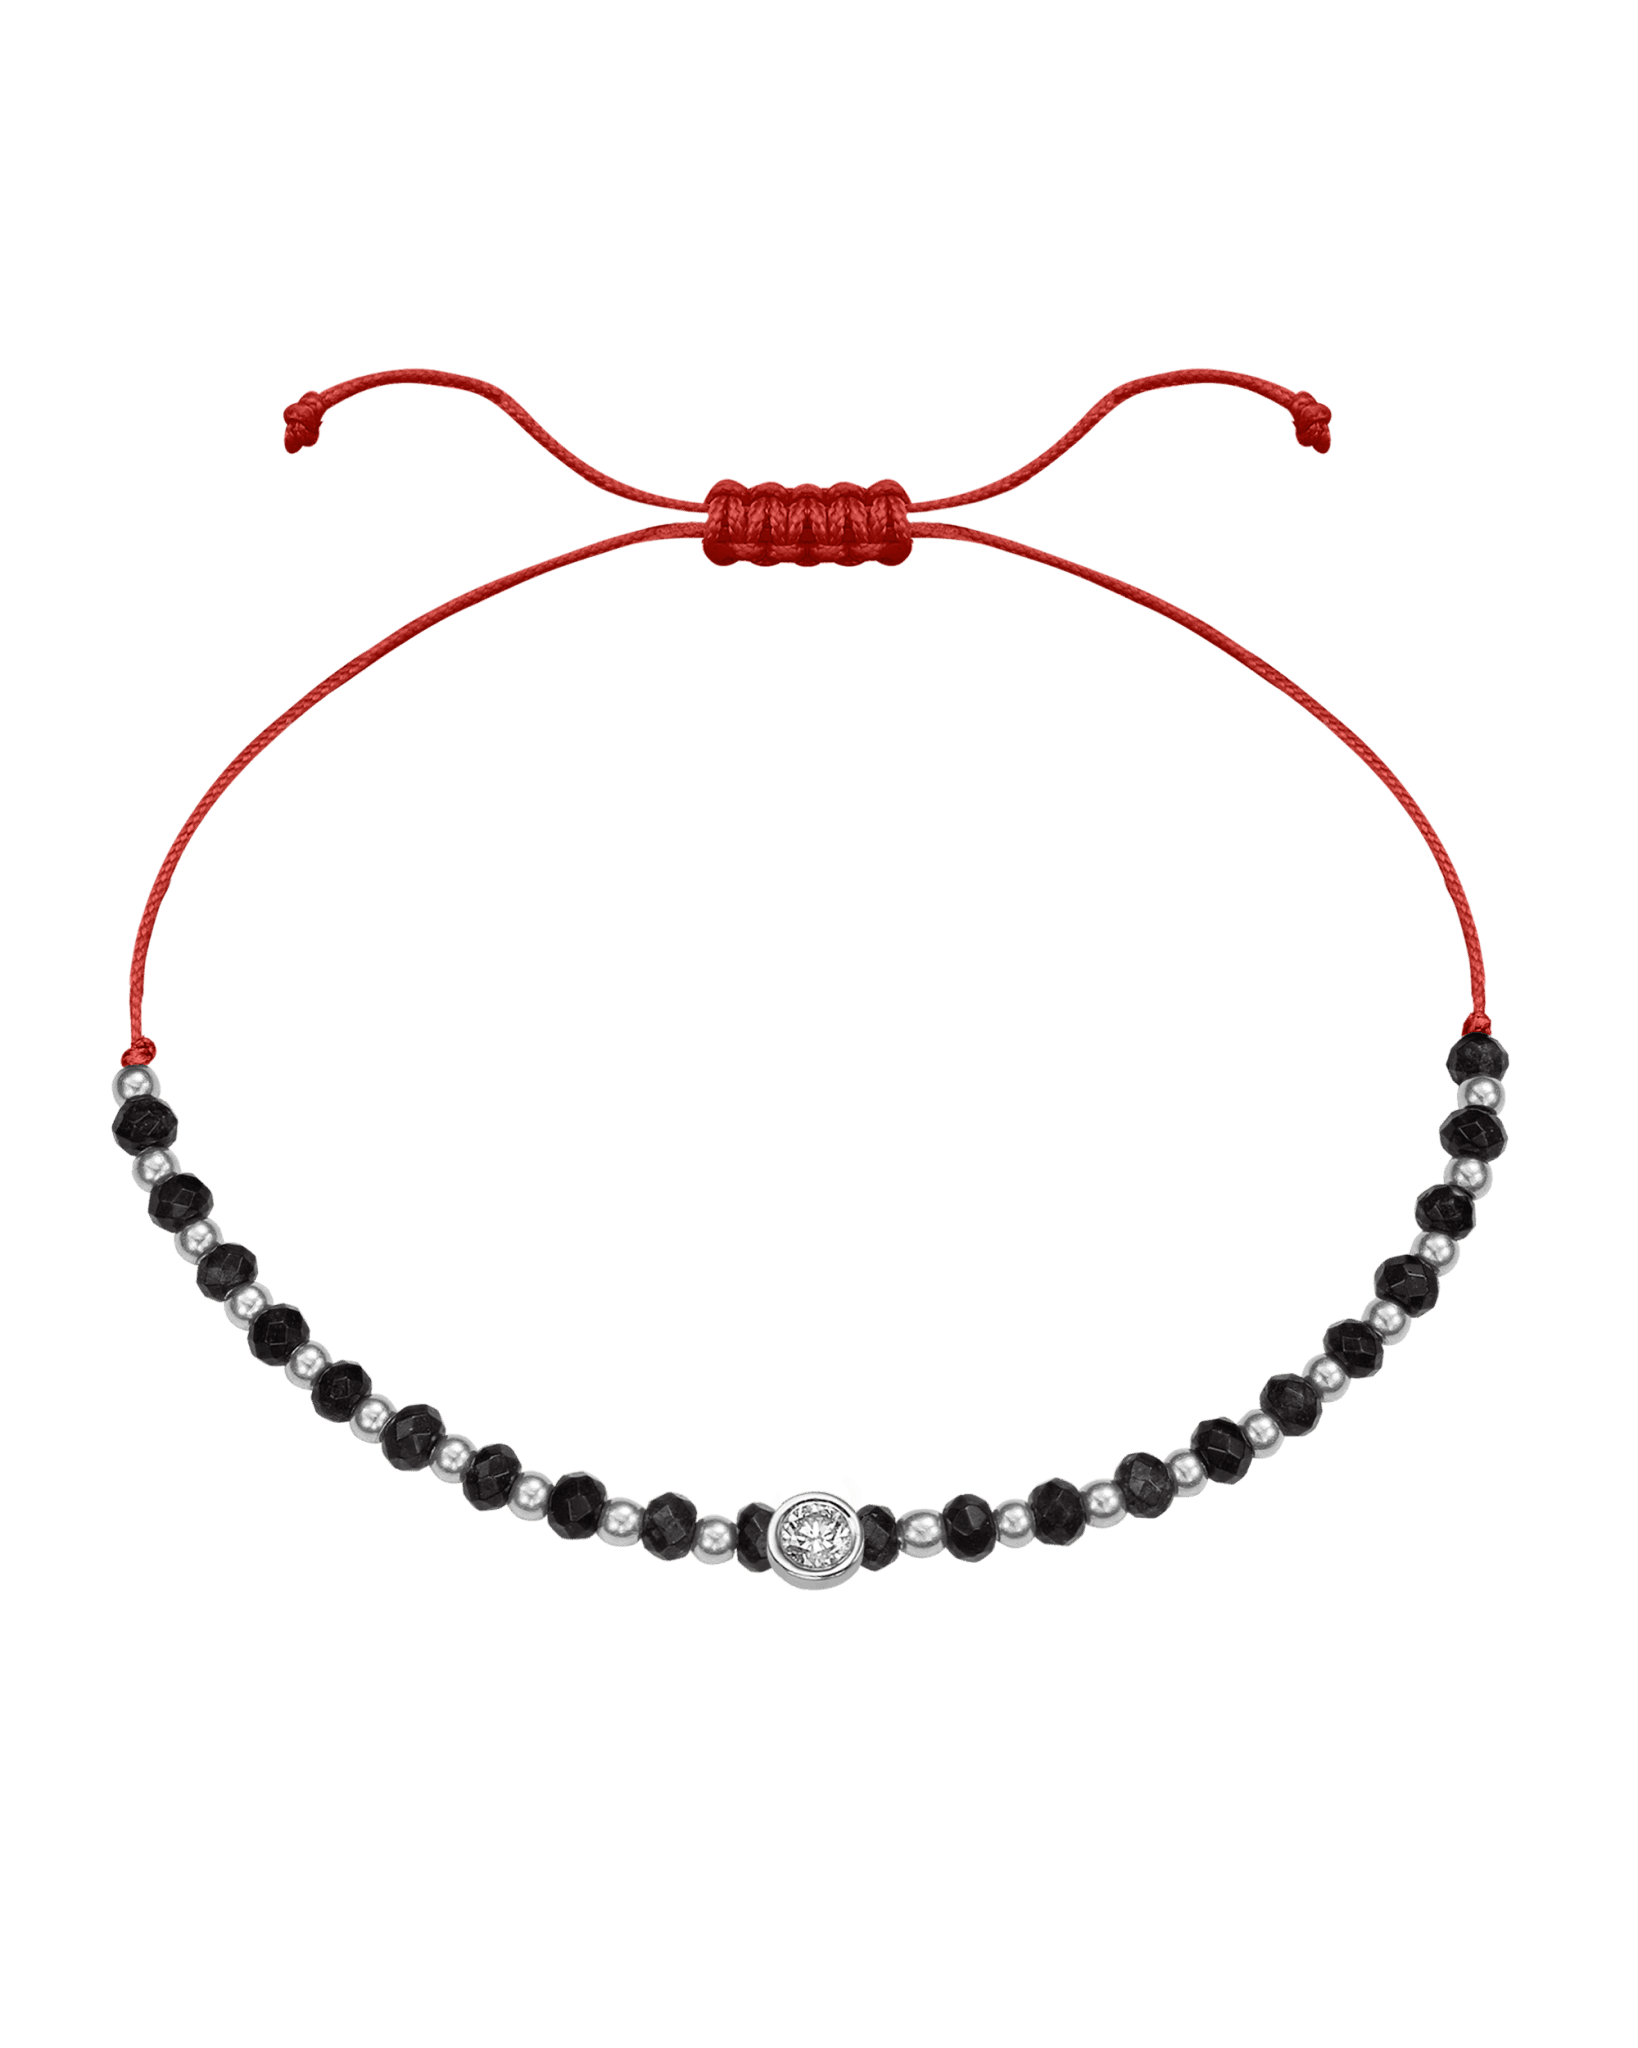 Black Onyx Gemstone String of Love Bracelet for Protection - 14K White Gold Bracelets 14K Solid Gold Red Large: 0.1ct 